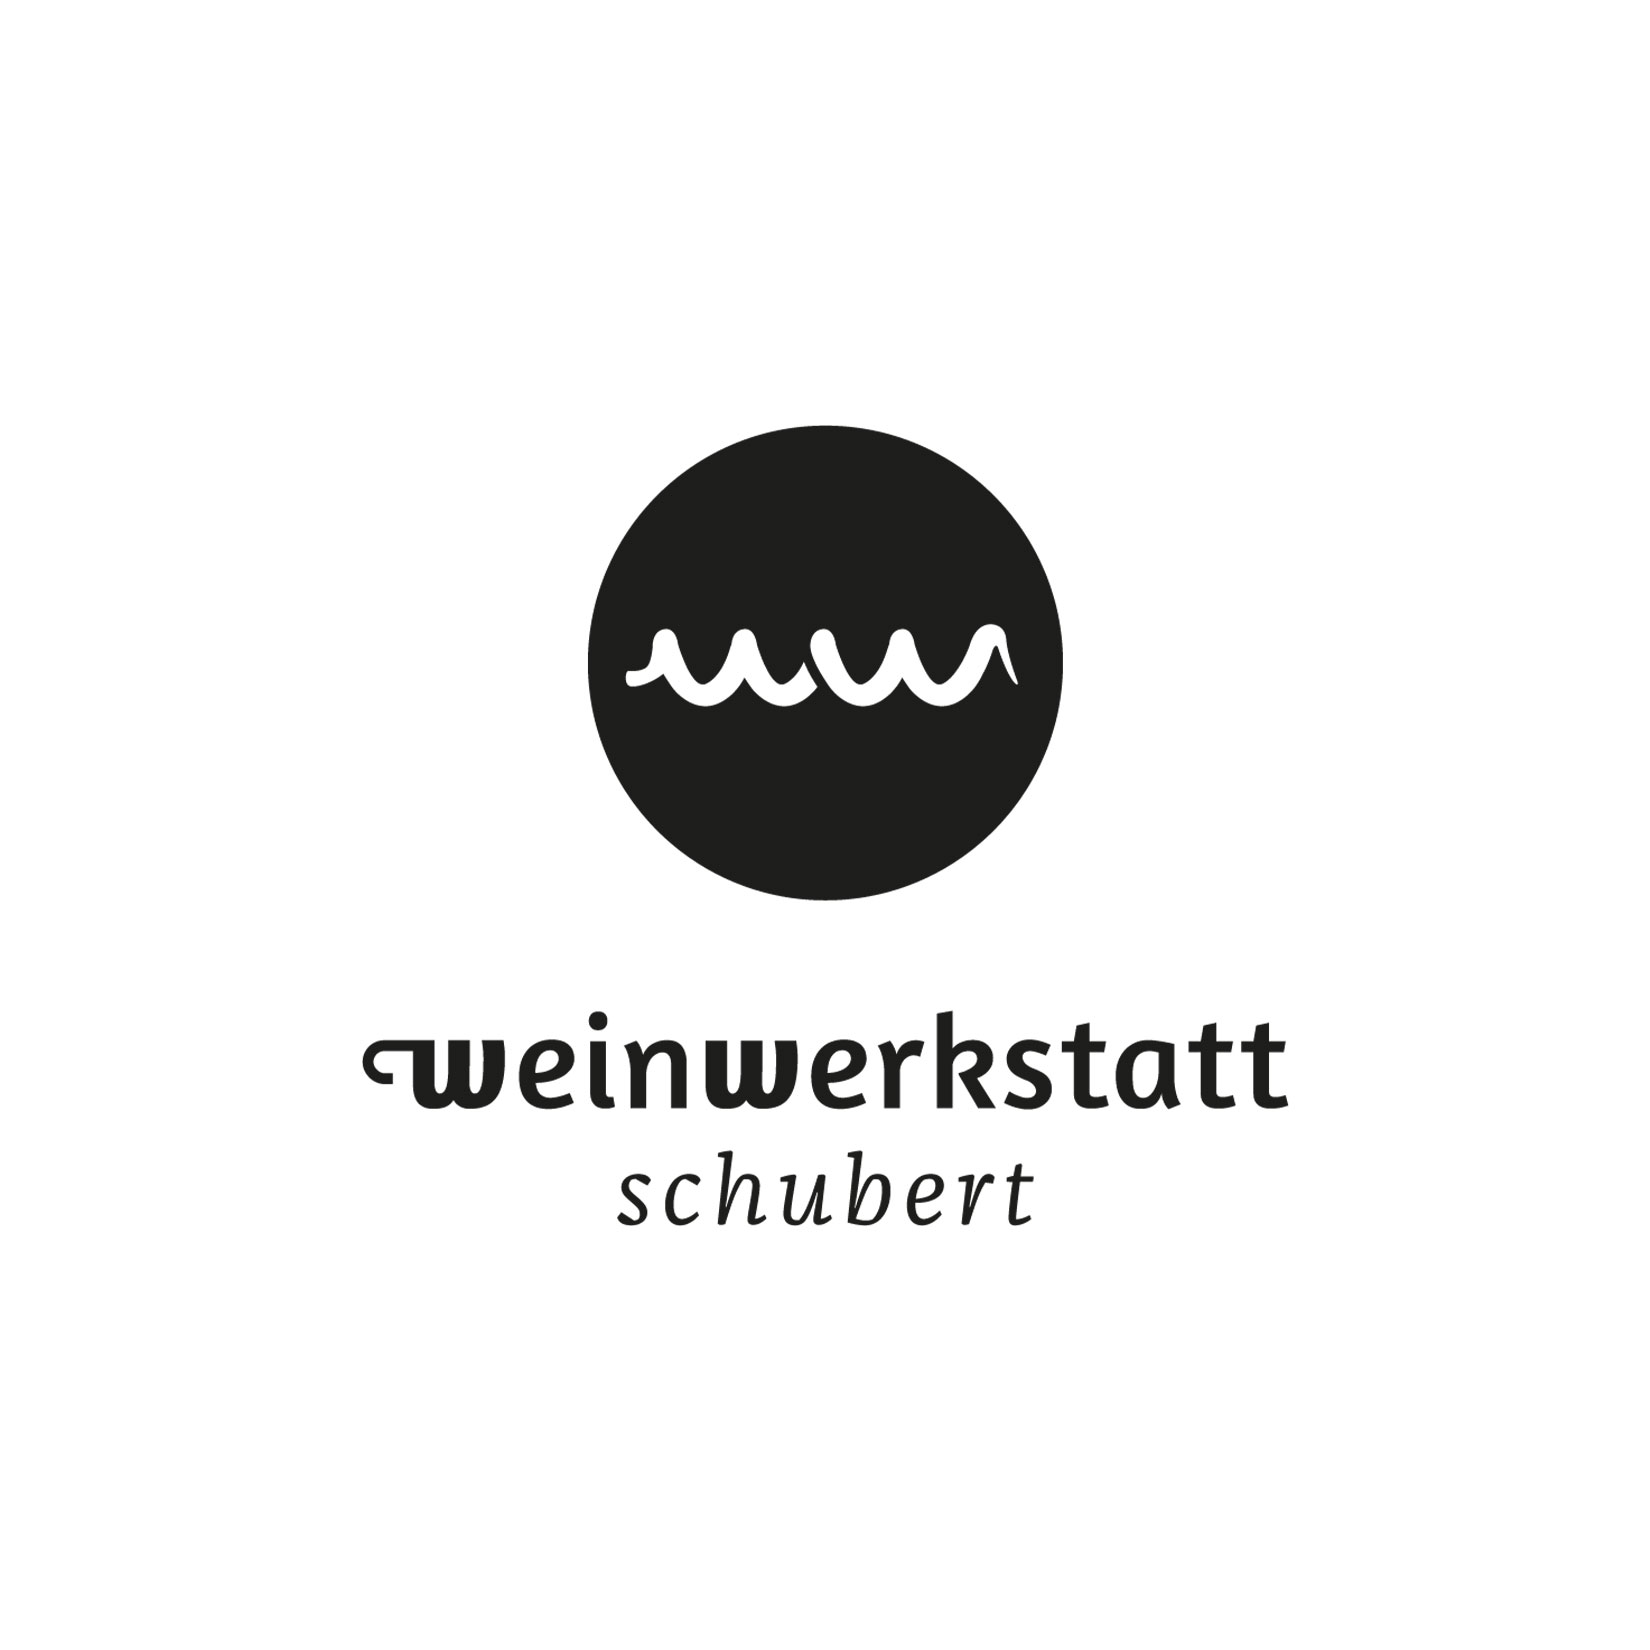 Wein Corporate Design Würzburg